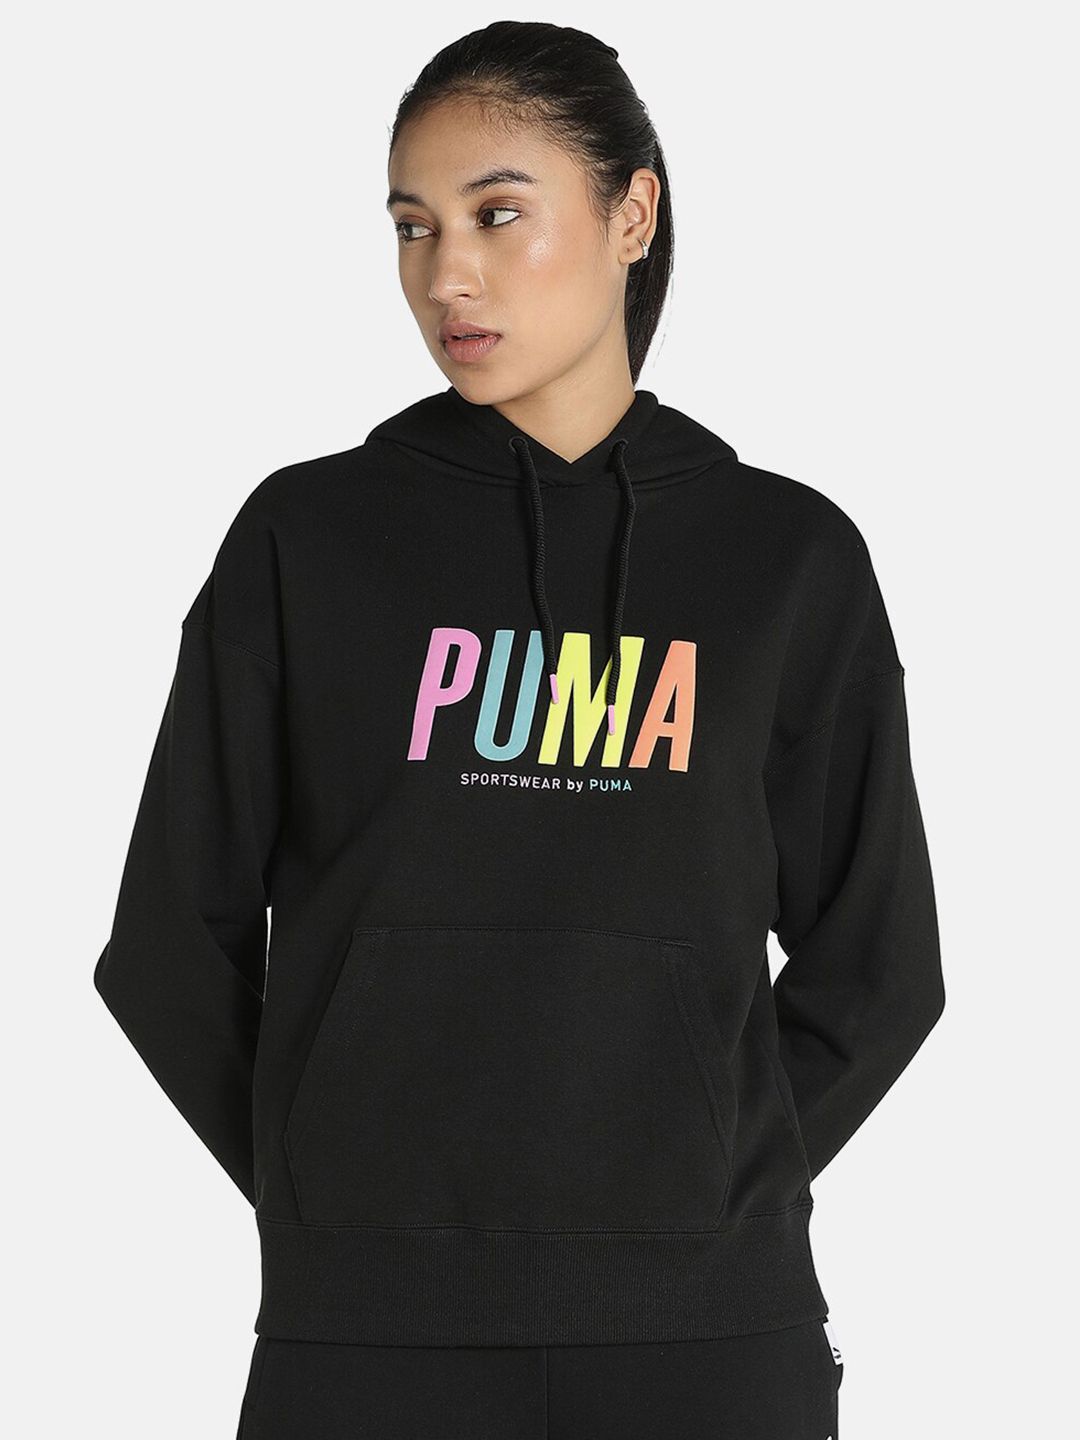 Puma Women Black Printed Hooded Sweatshirt Price in India